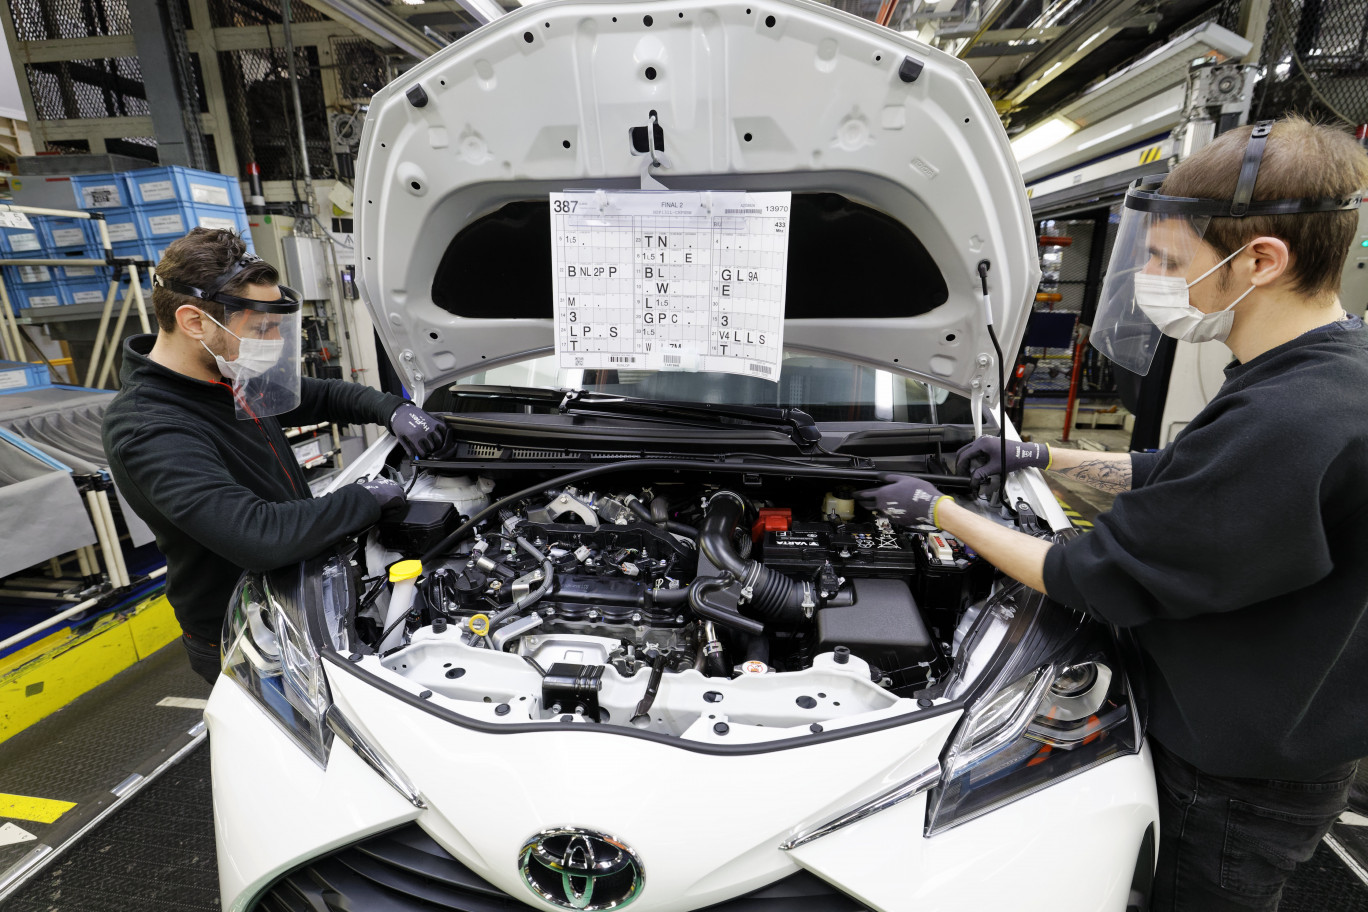 La production a repris sur le site de Toyota Valenciennes, après une pause d'un mois, suite à la crise du Covid-19. (Crédit : Samuel Dhote)